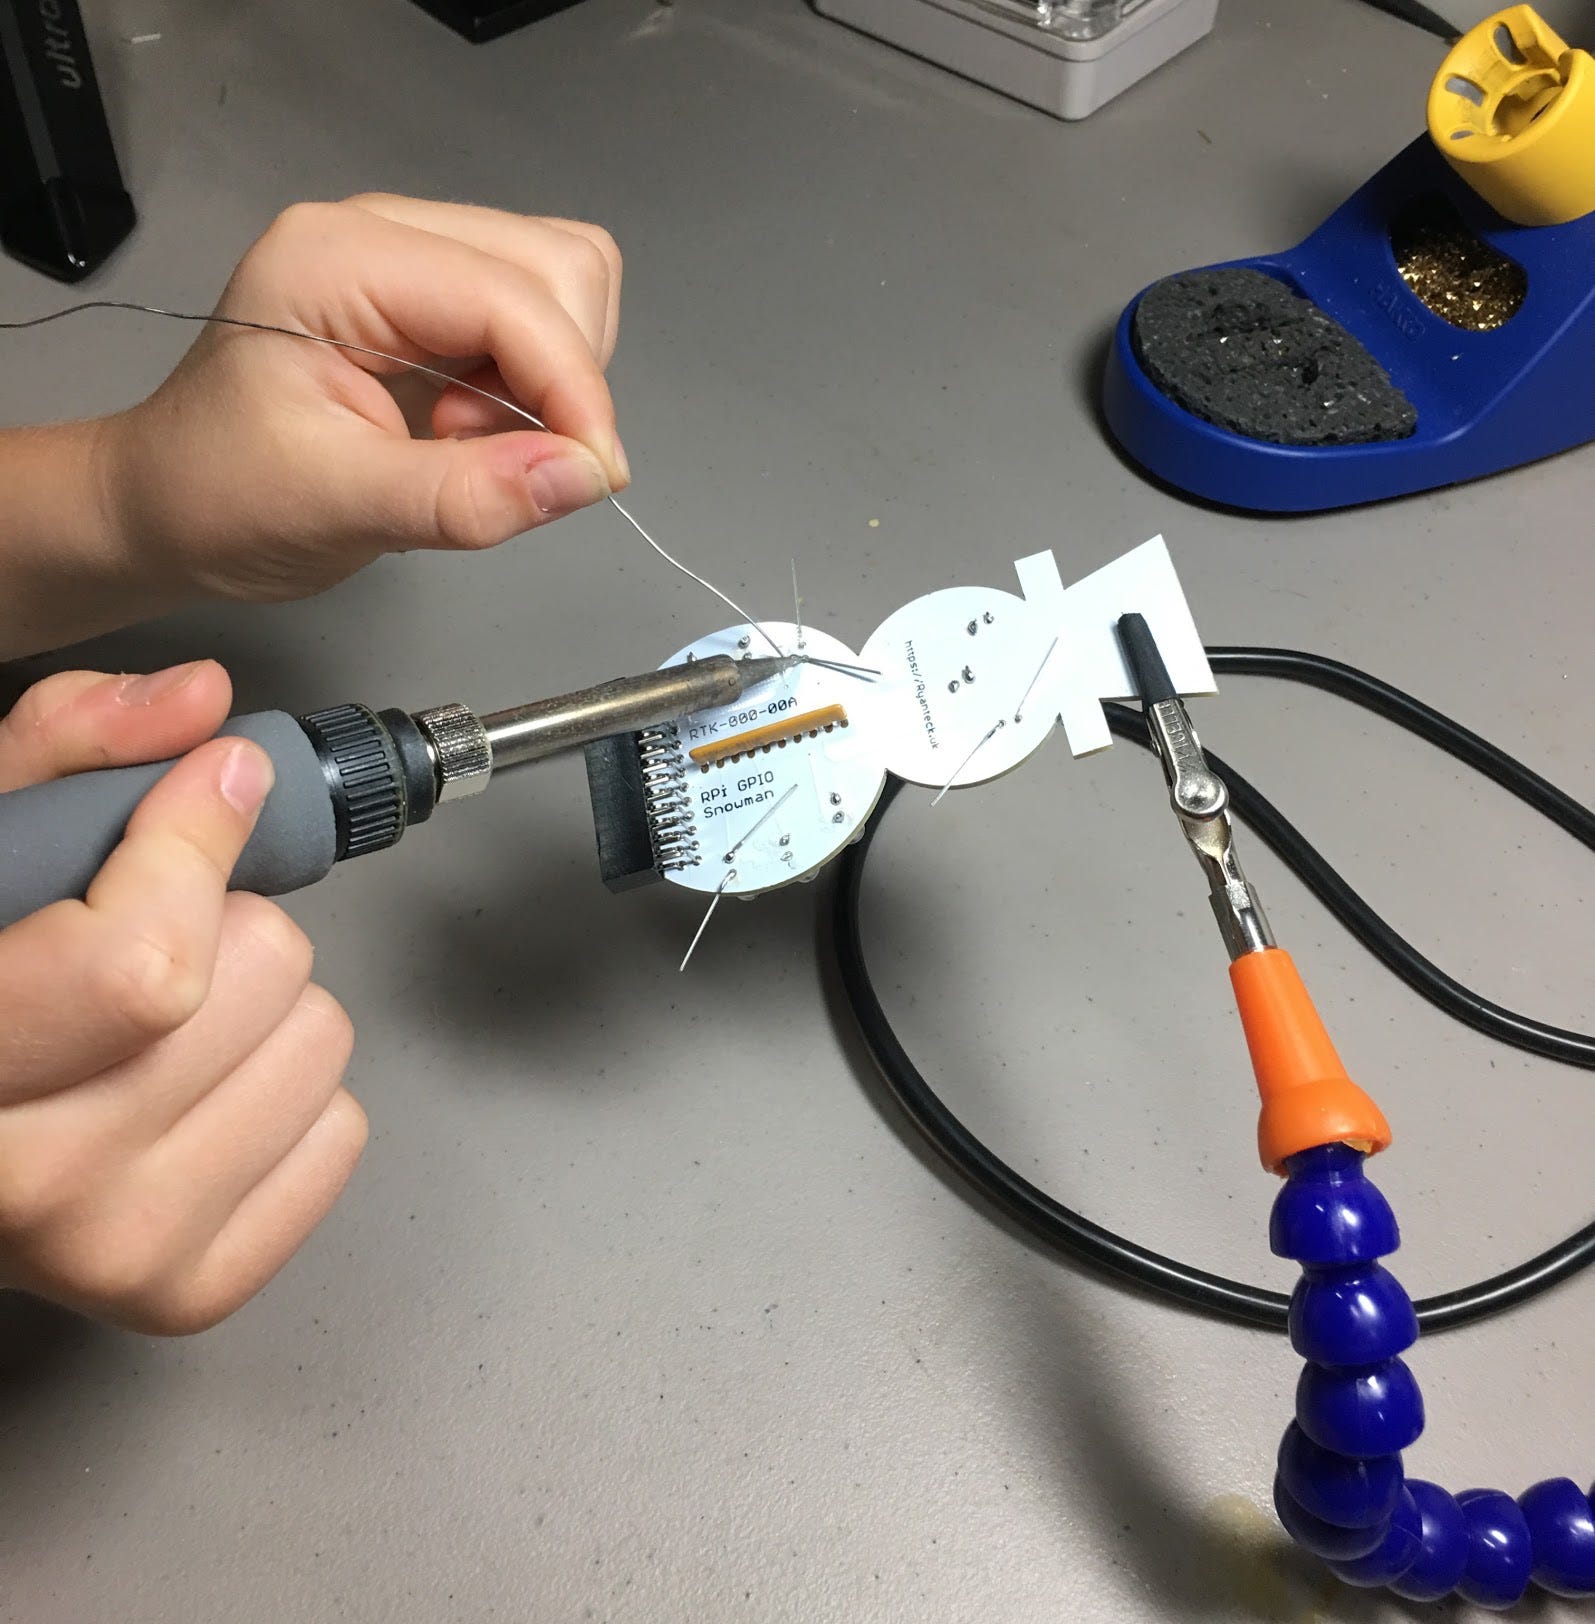 soldering kits for kids